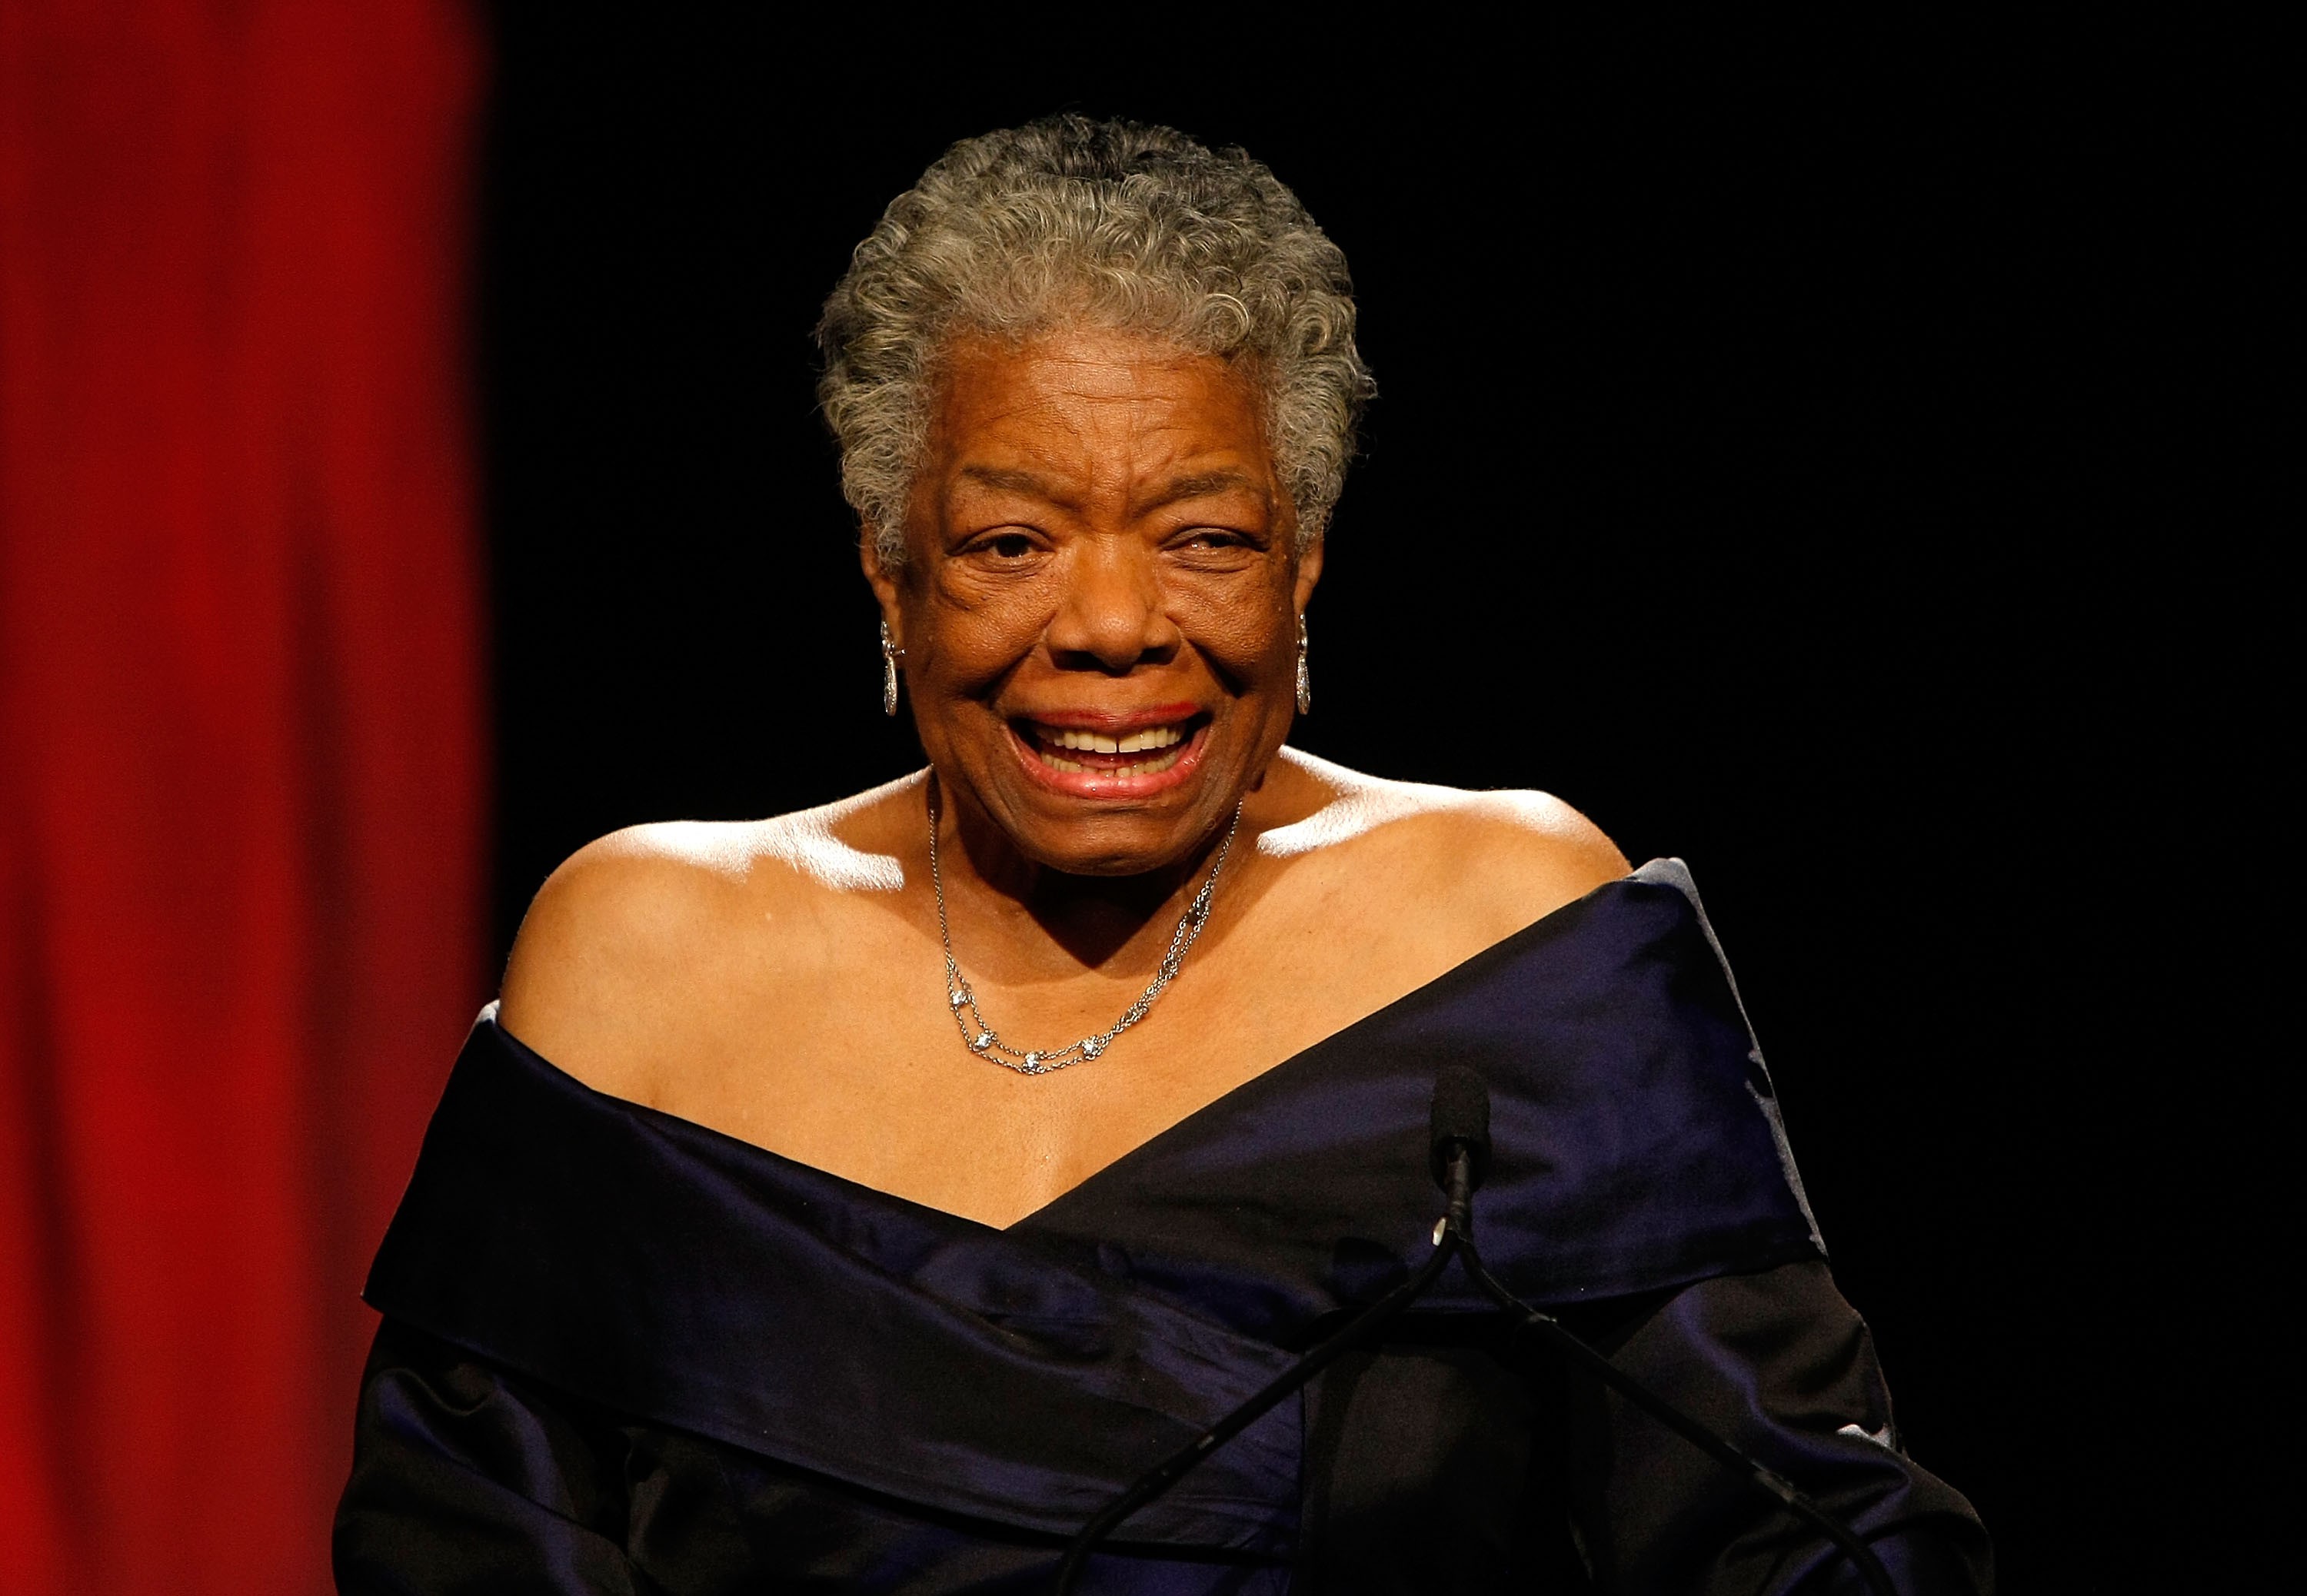 Escritora Maya Angelou se torna a 1ª mulher negra a estampar moeda de dólar (Foto: Getty Images)